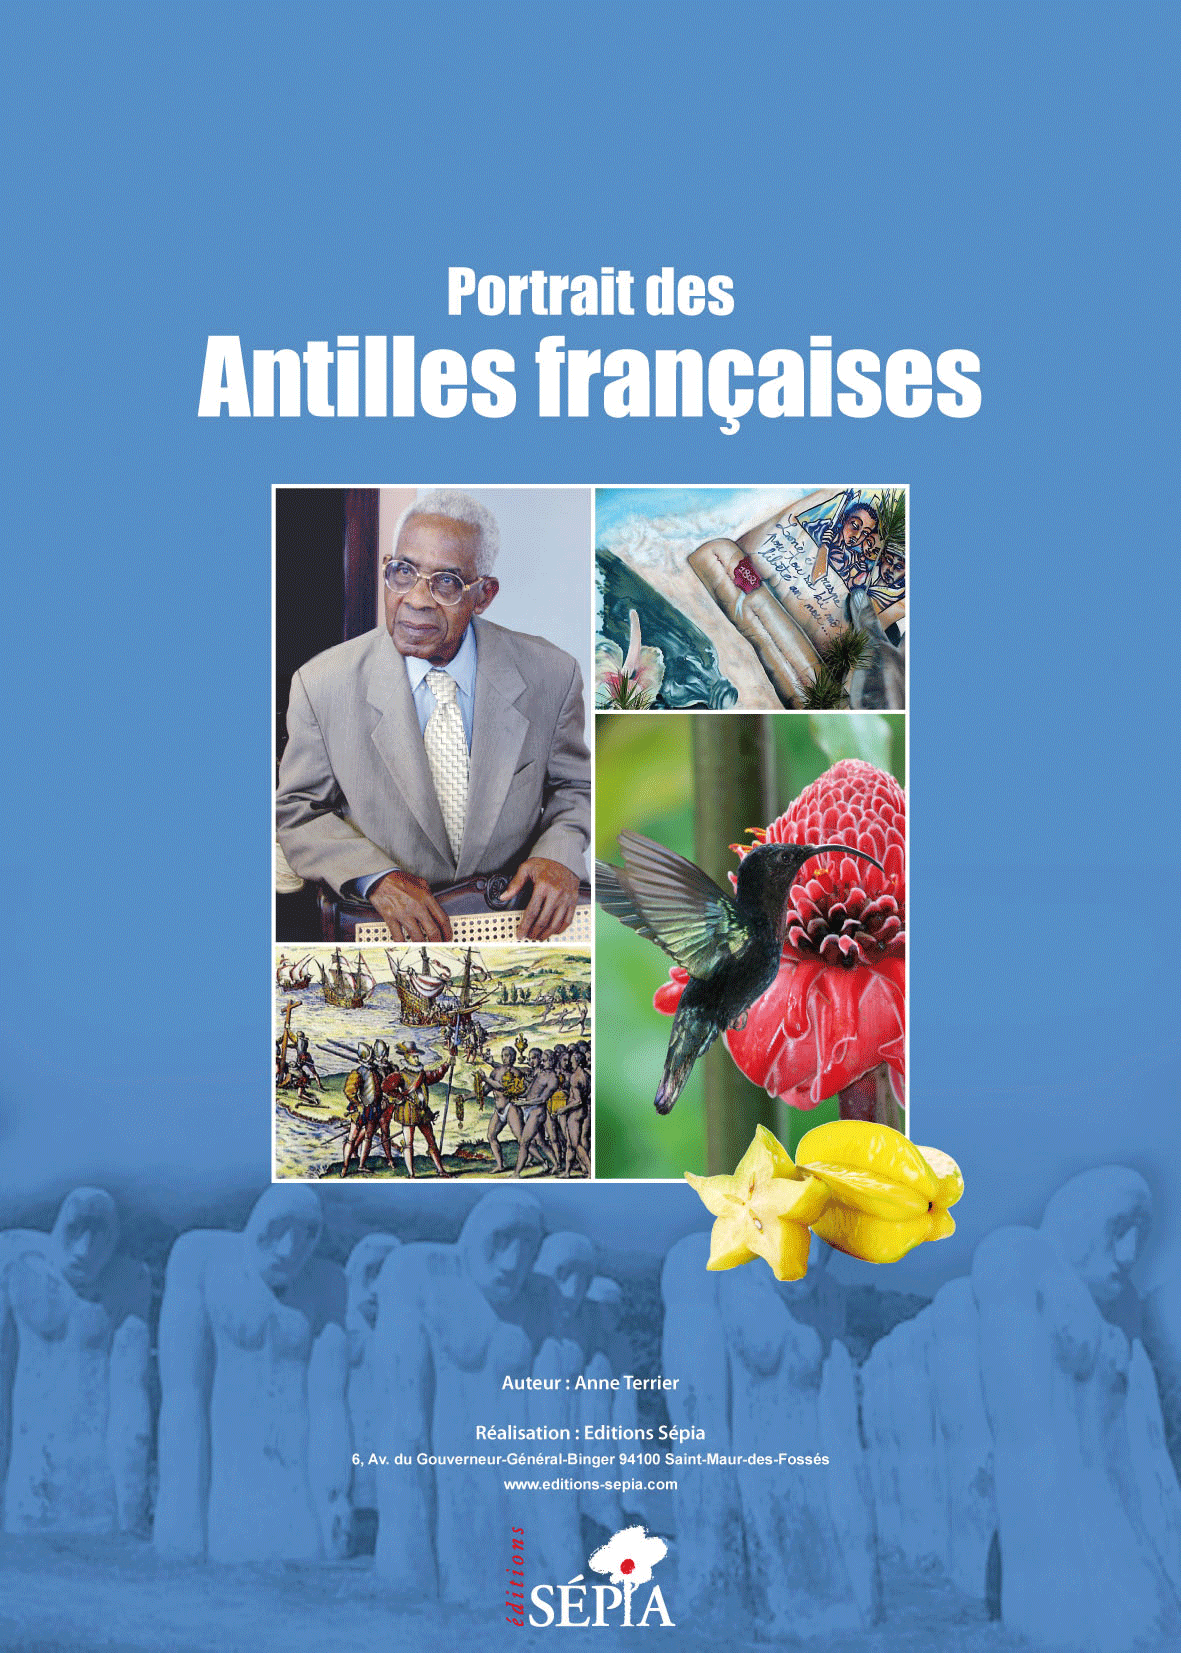 Portrait des Antilles françaises